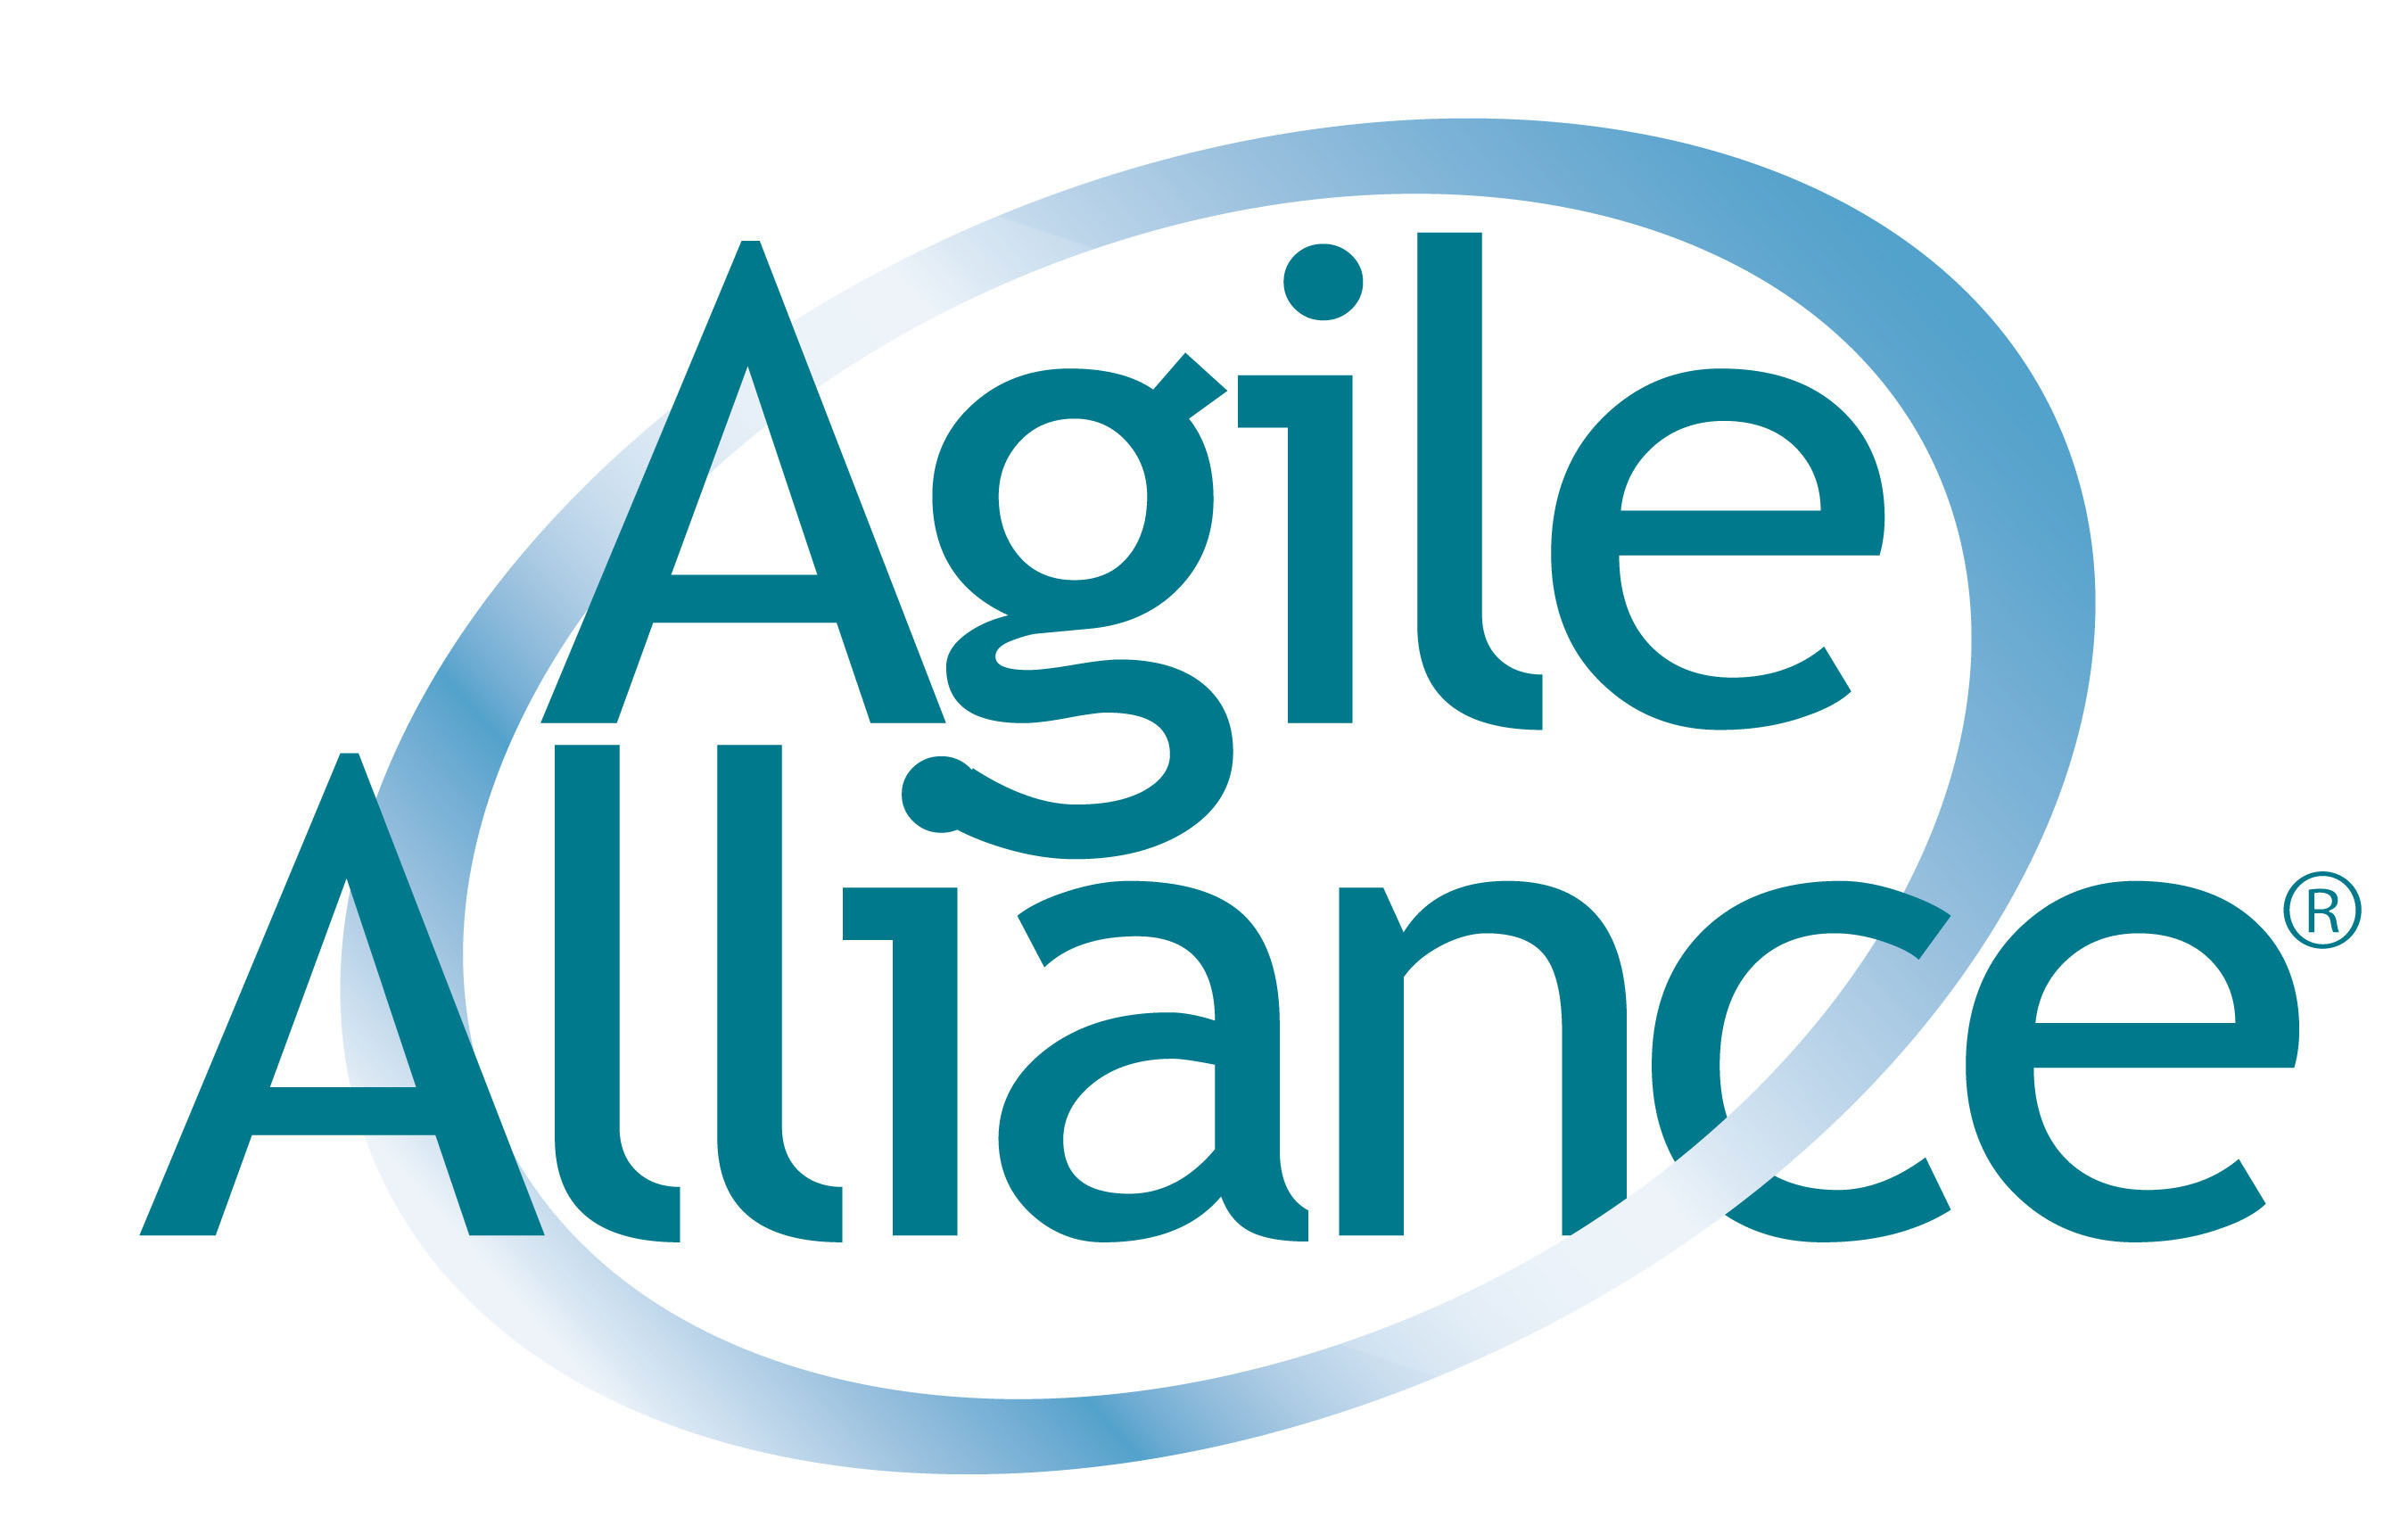 Agile Alliance logo. (PRNewsFoto/Agile Alliance) (PRNewsFoto/AGILE ALLIANCE)